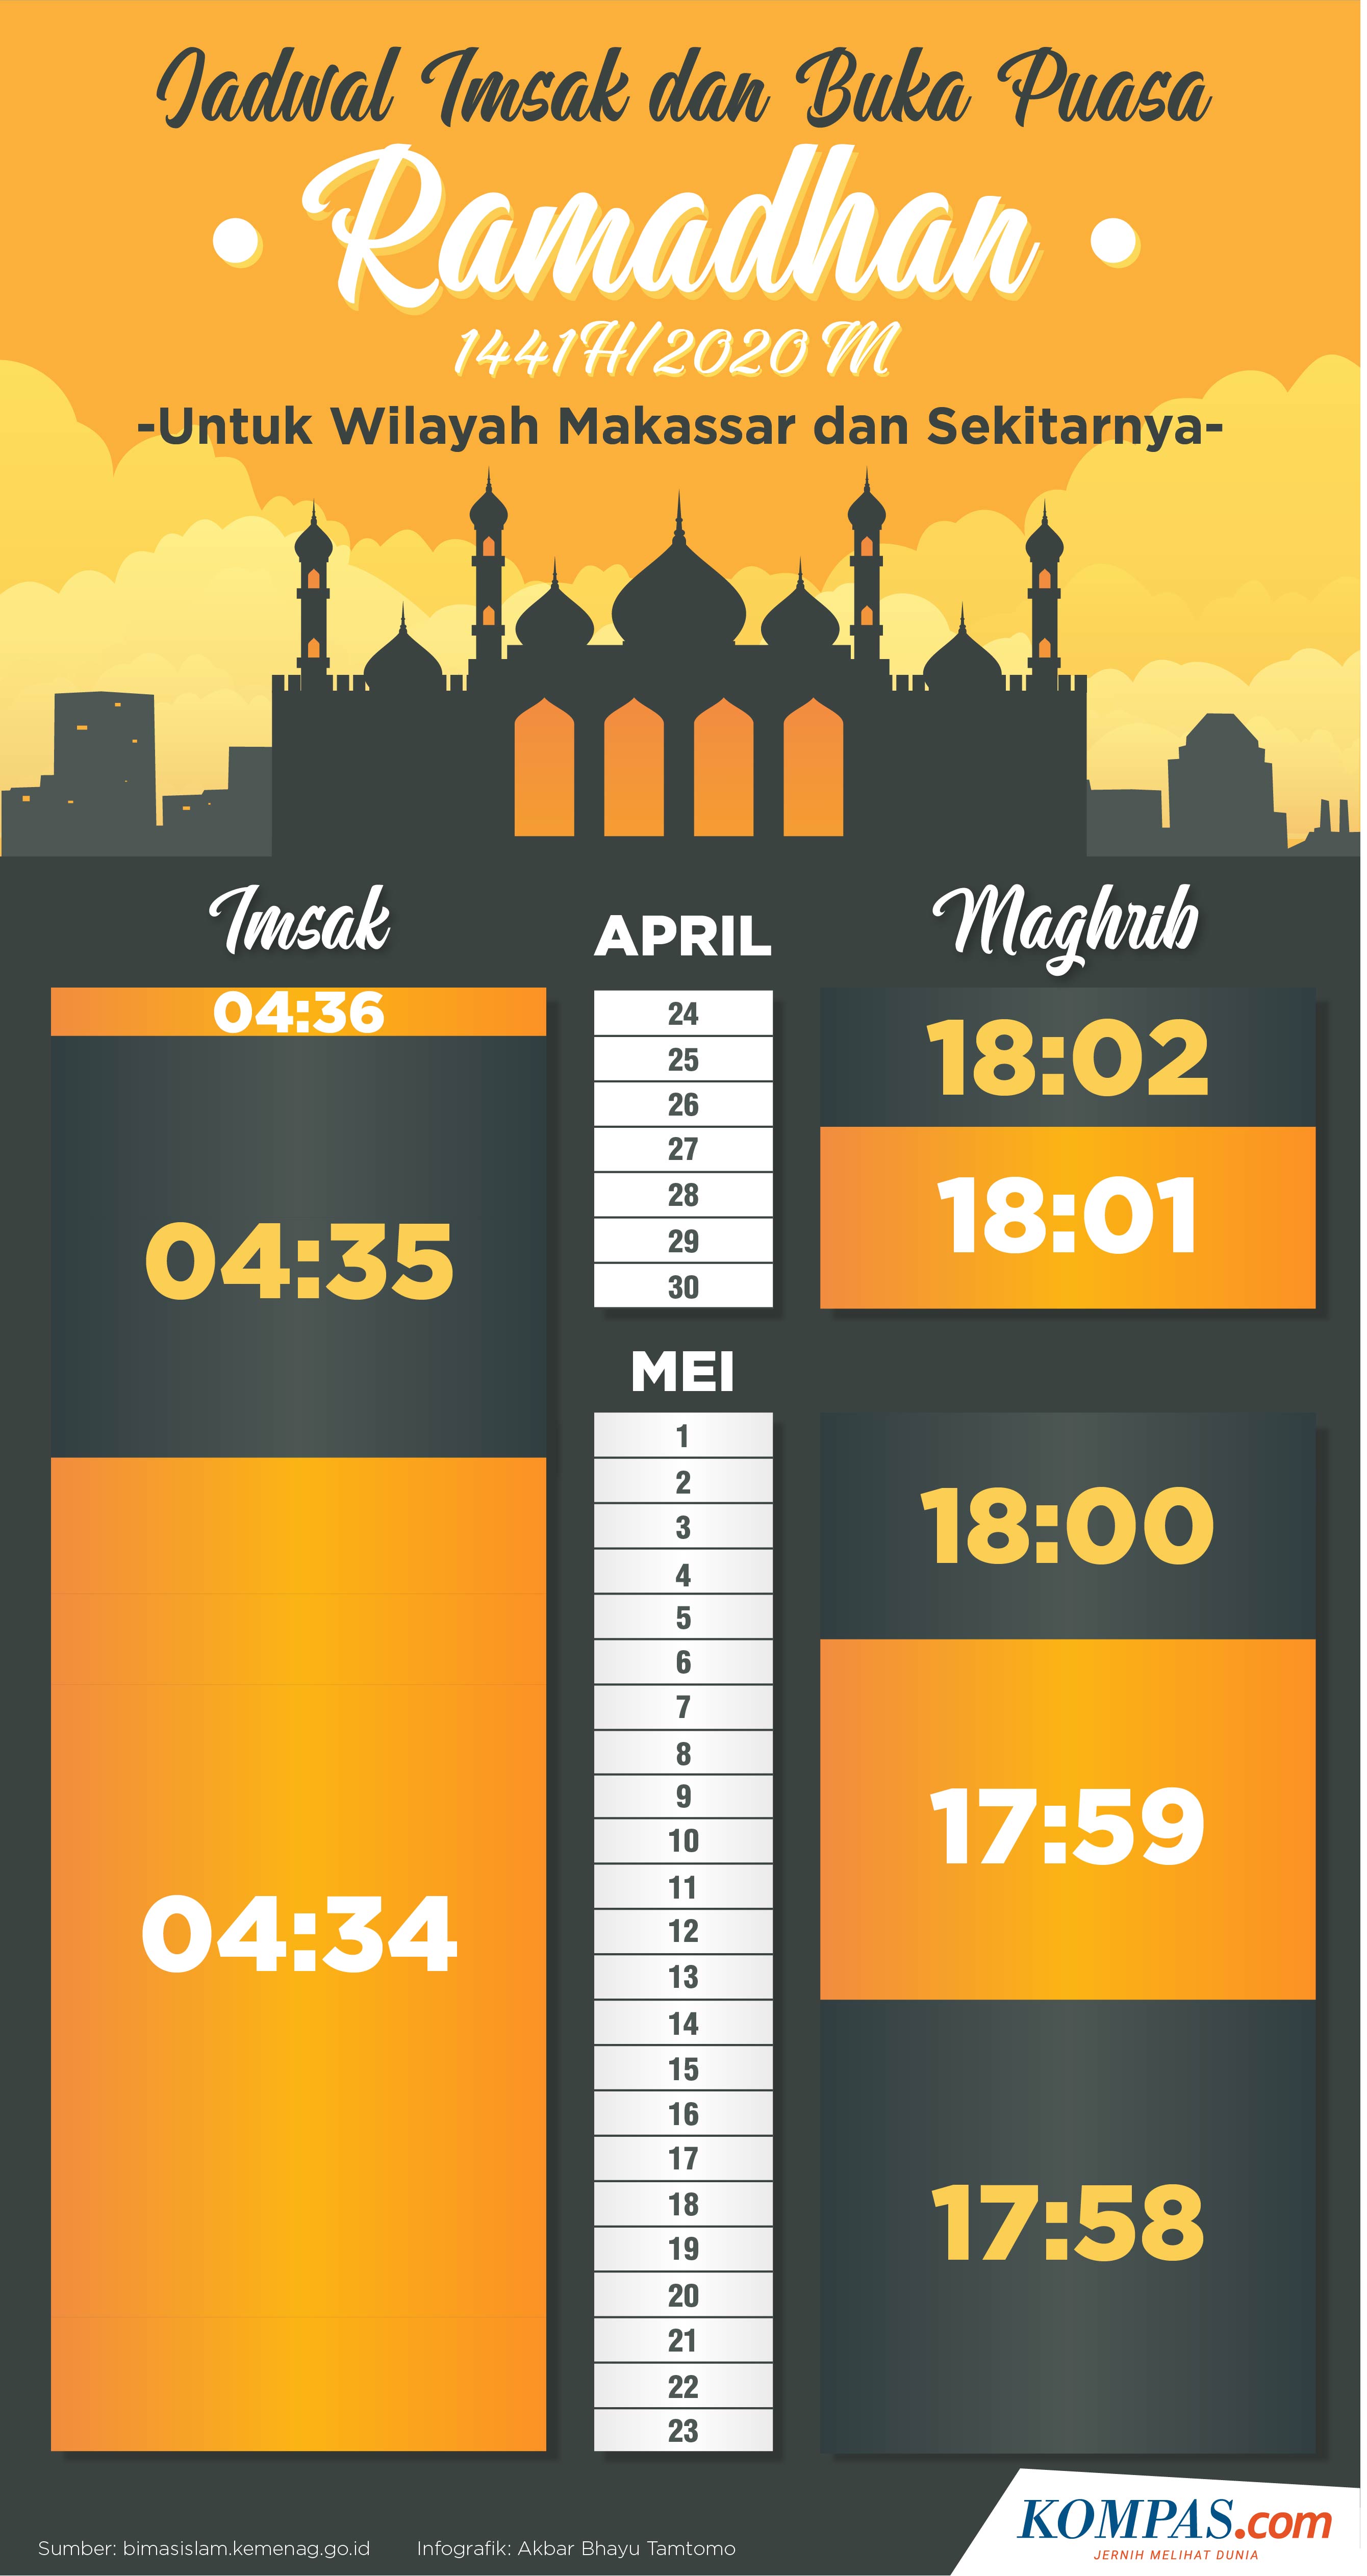 Infografik Jadwal Imsakiyah Dan Buka Puasa Di Makassar Selama Ramadhan 2020